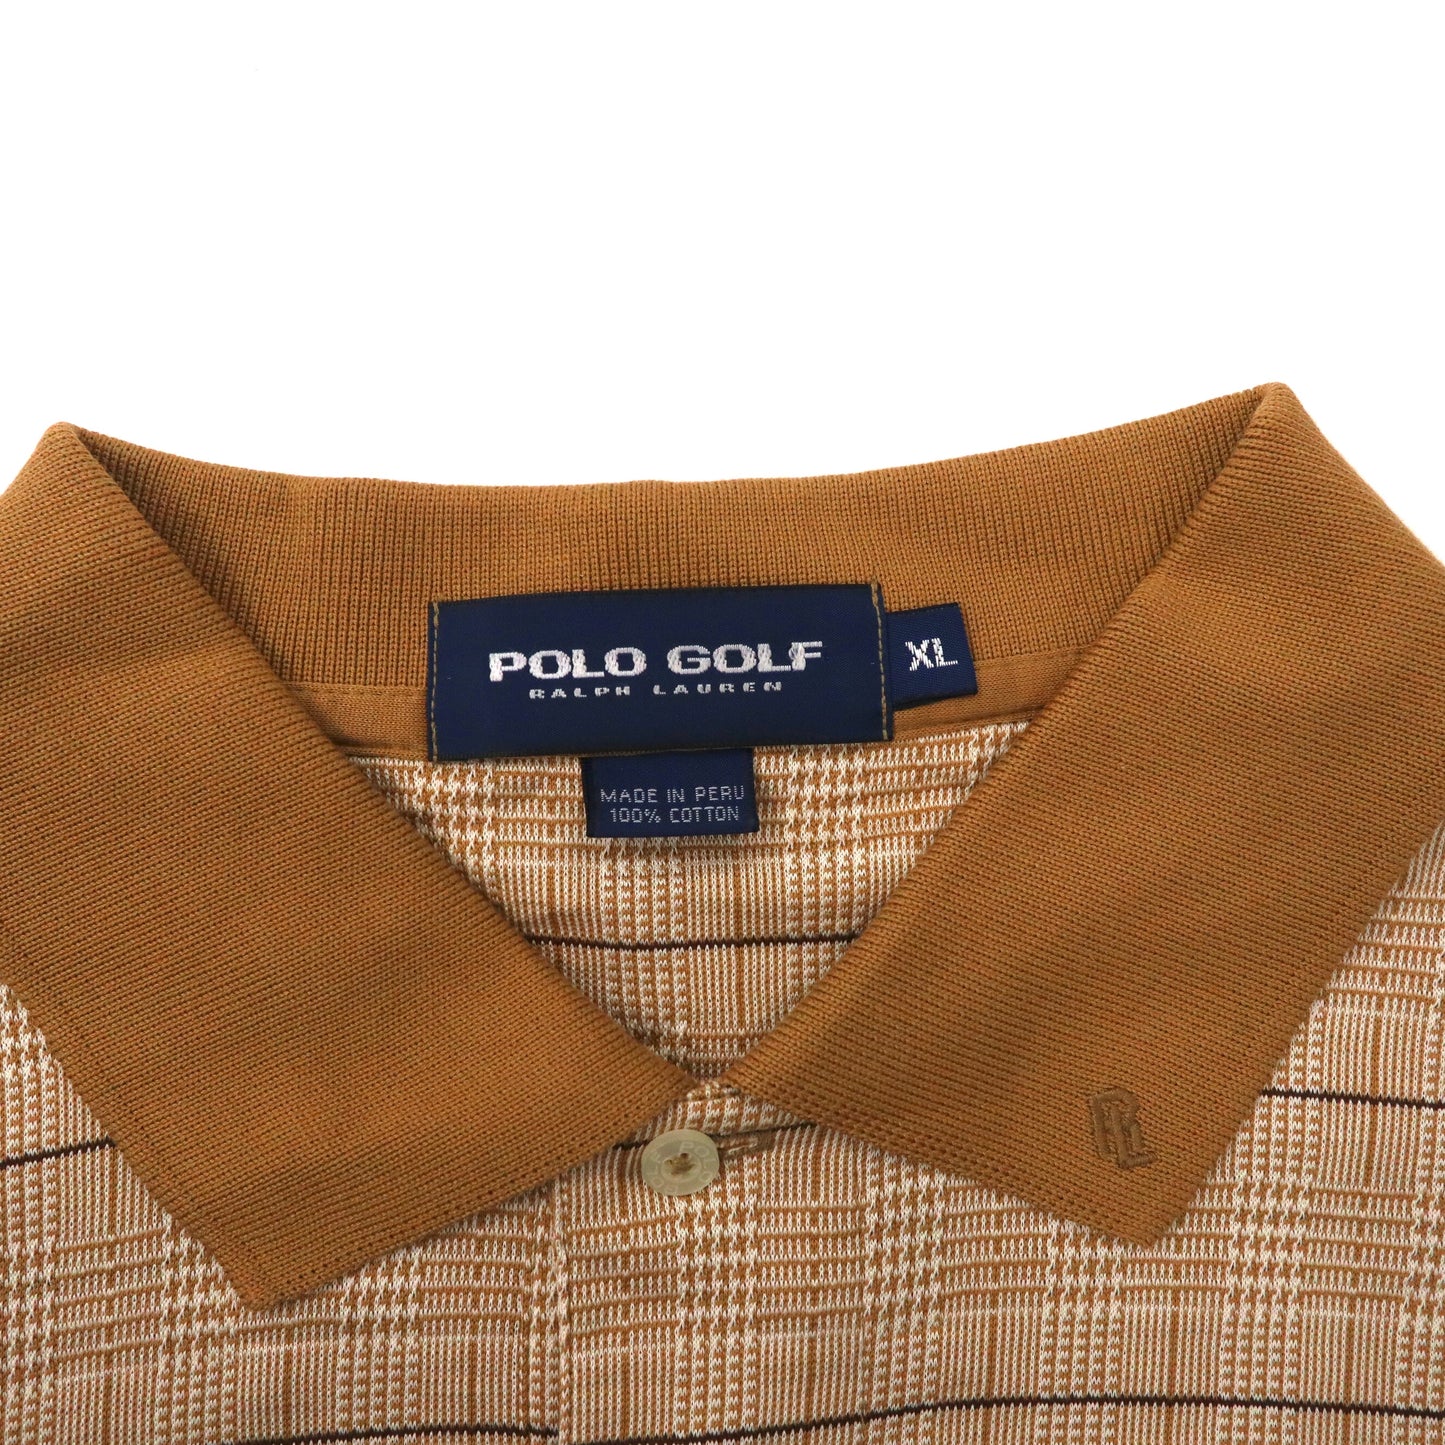 POLO GOLF RALPH LAUREN ビッグサイズ 長袖ポロシャツ XL ベージュ チェック コットン ペルー製